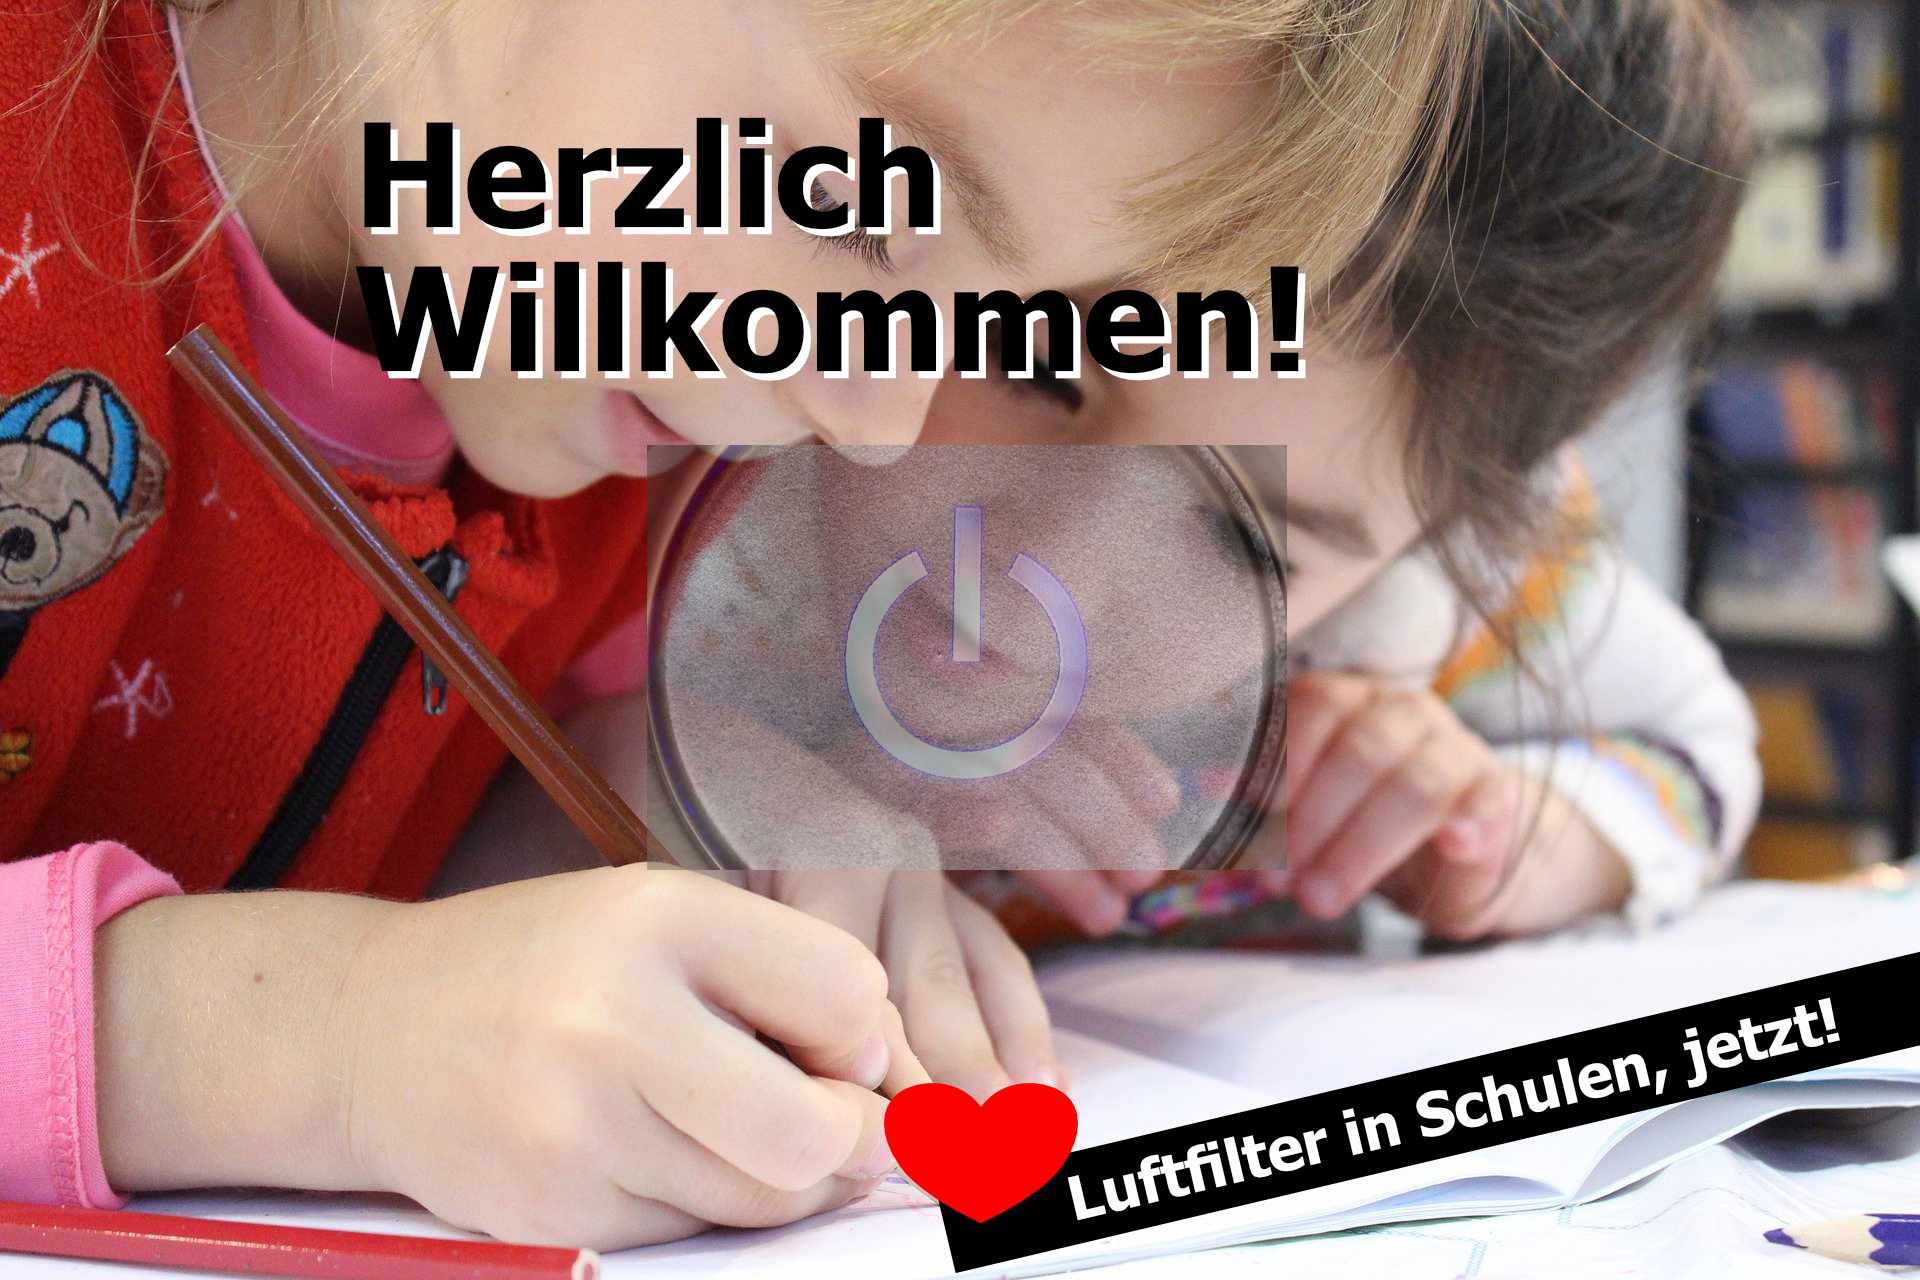 You are currently viewing Kampagnenseite zum Bürgerbegehren „Luftfilter in Schulen, jetzt!“ ist online